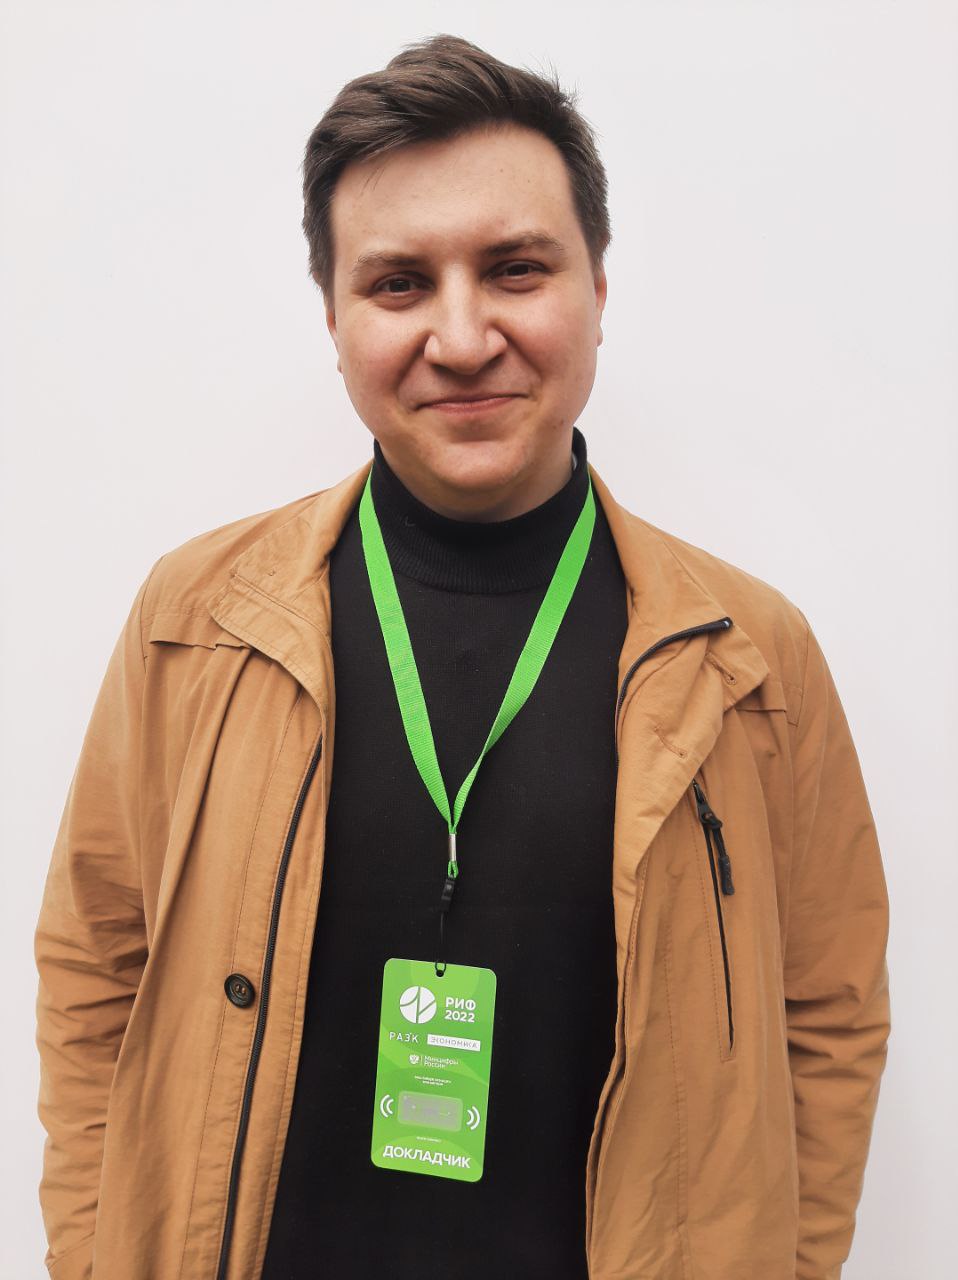 Сергей Максименко